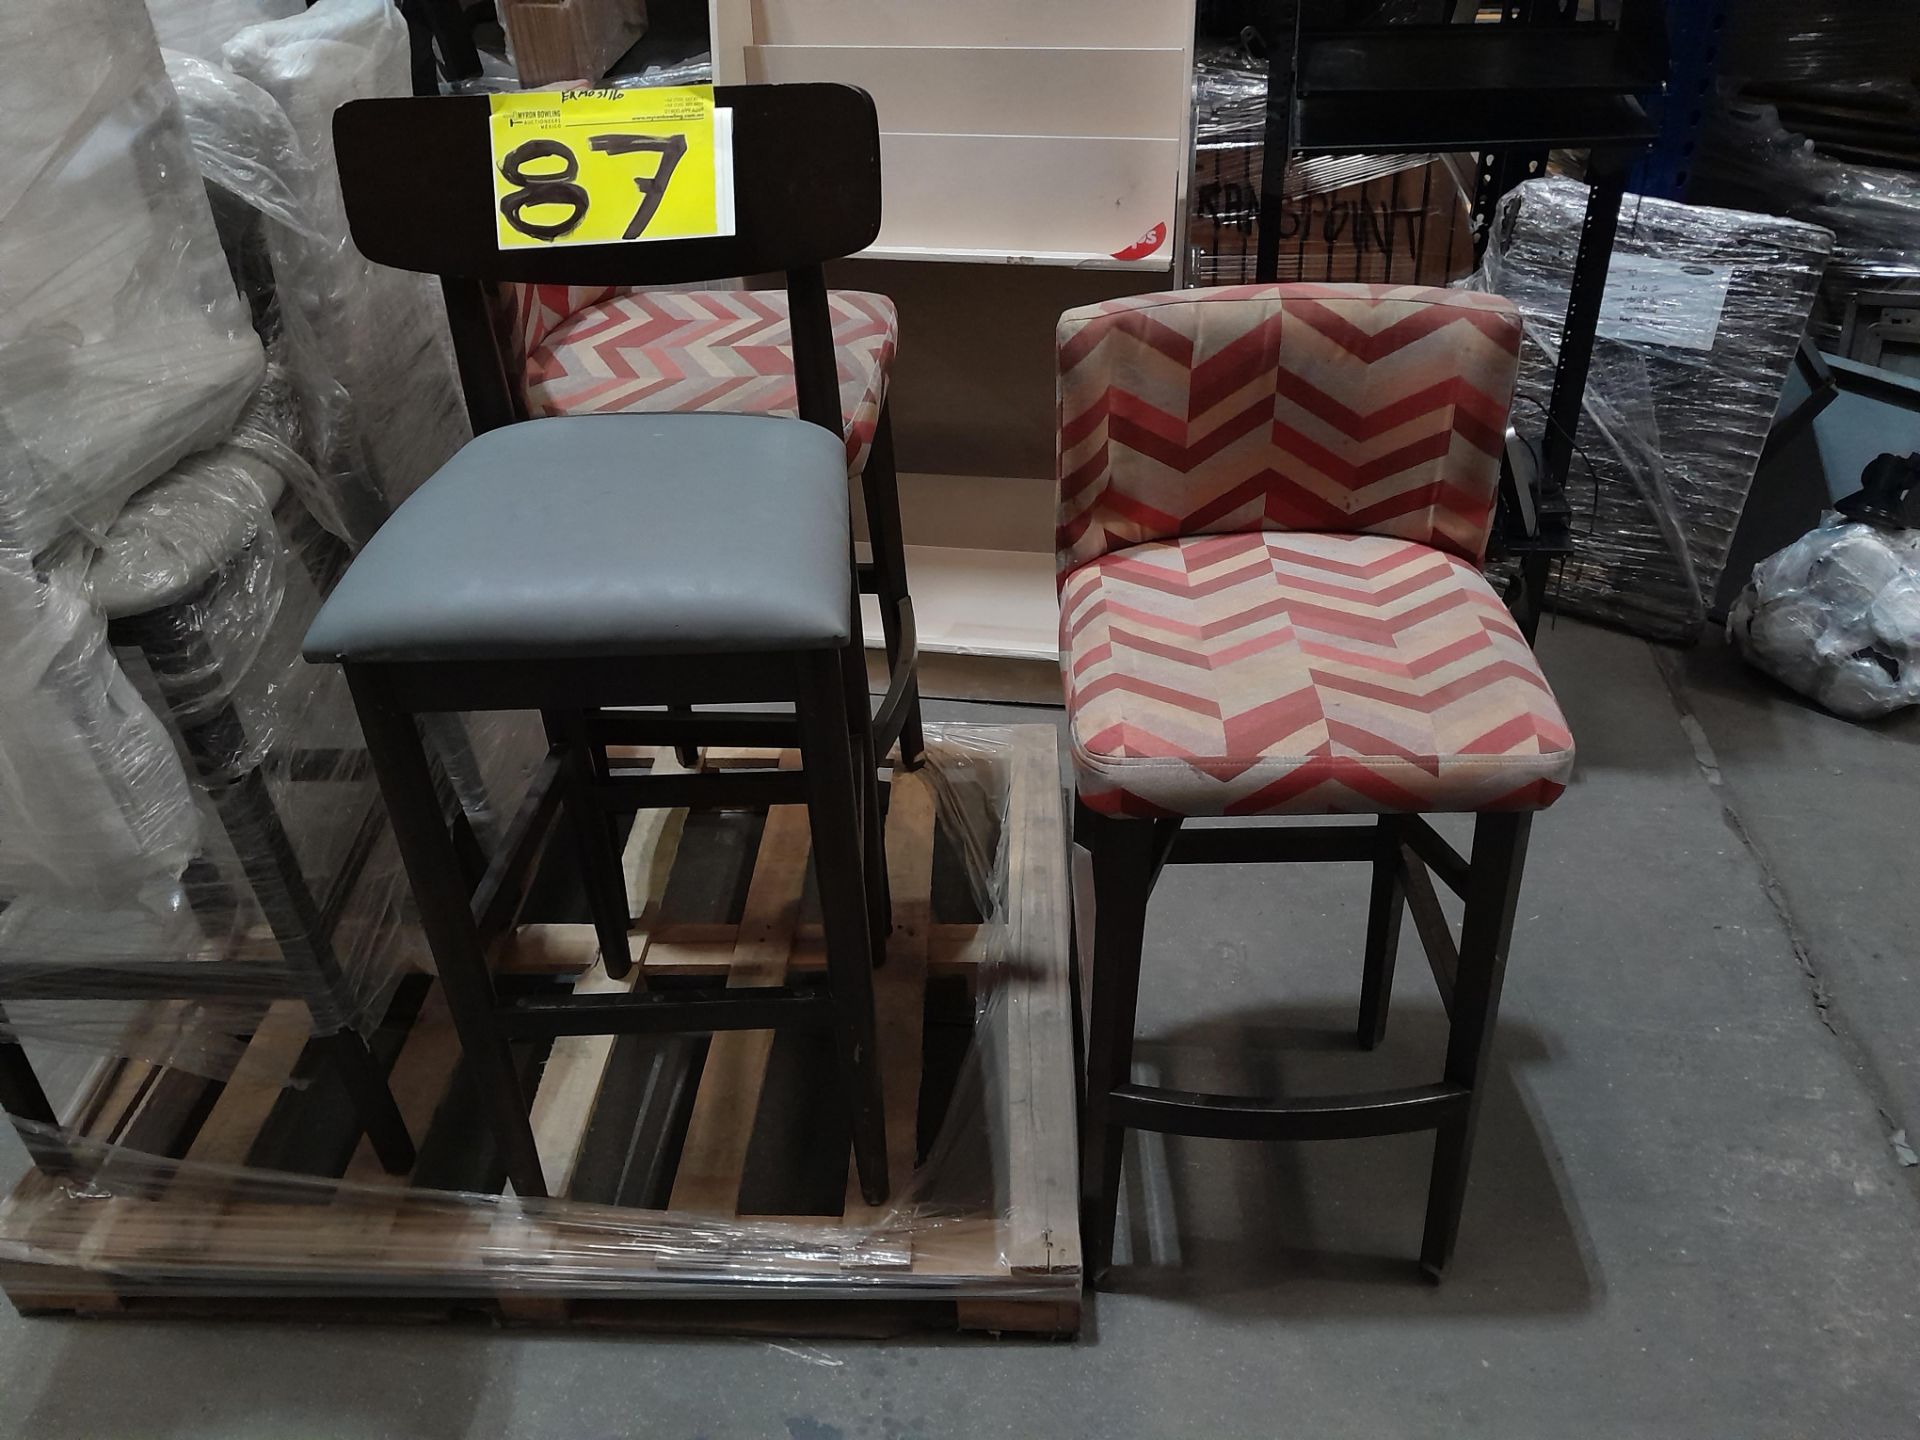 Lote de 7 sillas periqueras contiene: 2 sillas periqueras forradas de tela de asiento y respaldo; 5